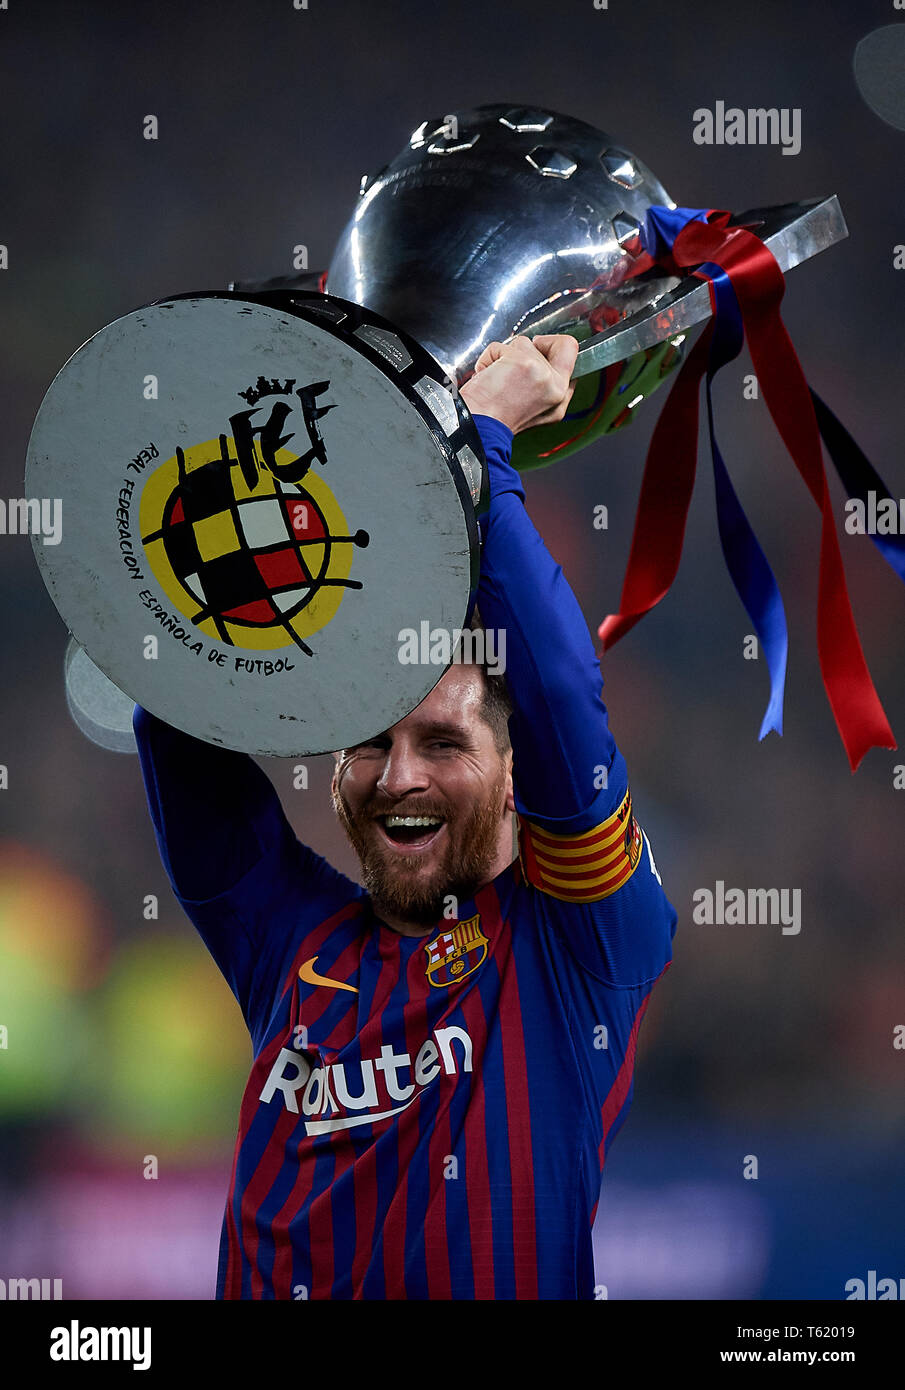 Barcelona, España. 27 abr, 2019. Fútbol: Liga Santander 2018/19 : de Lionel Messi de Barcelona celebra con el trofeo de la Liga tras la victoria de equipo en la Primera División